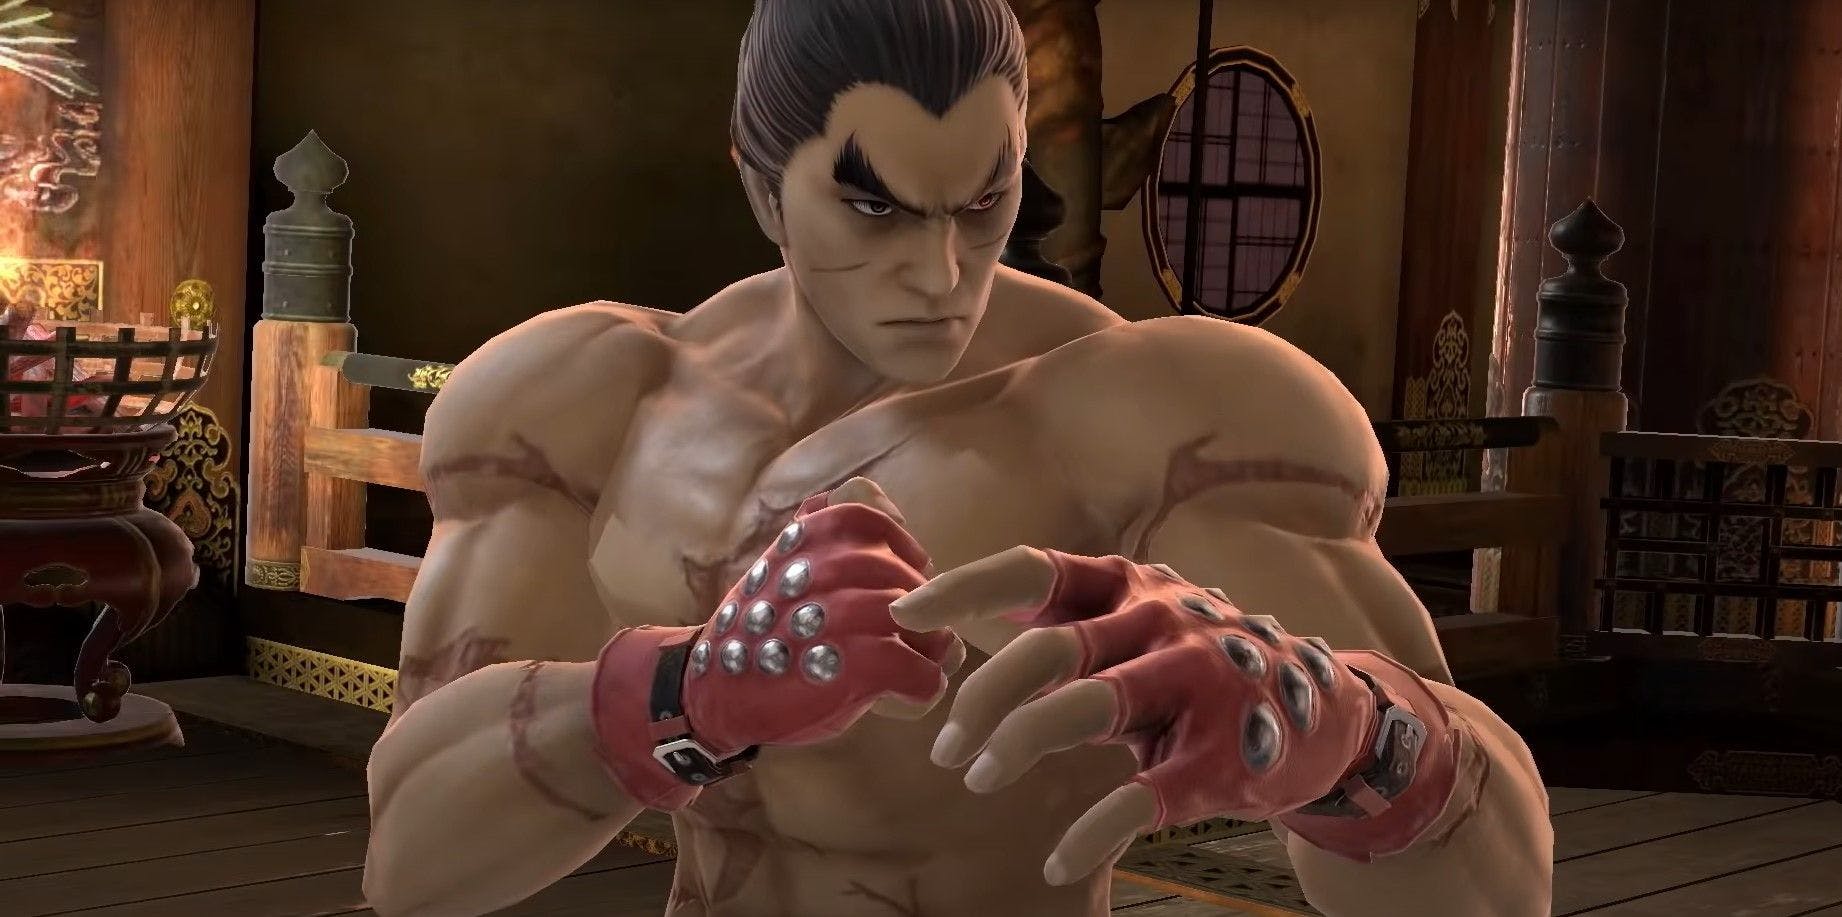 Who Tekken's Kazuya Mishima Is In Smash Ultimate